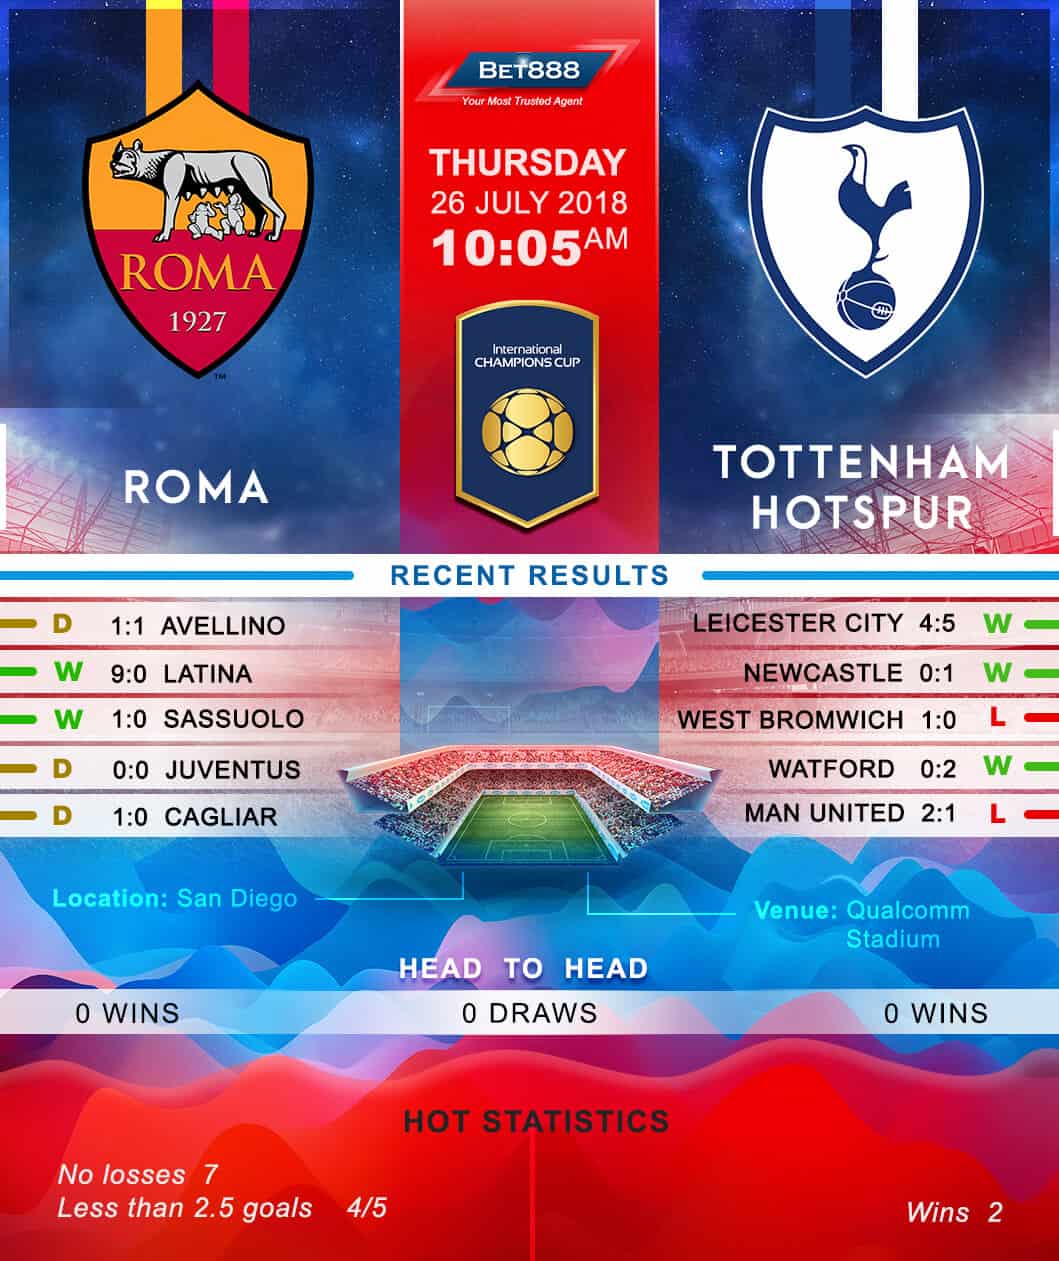 AS Roma vs Tottenham Hotspur 26/07/18